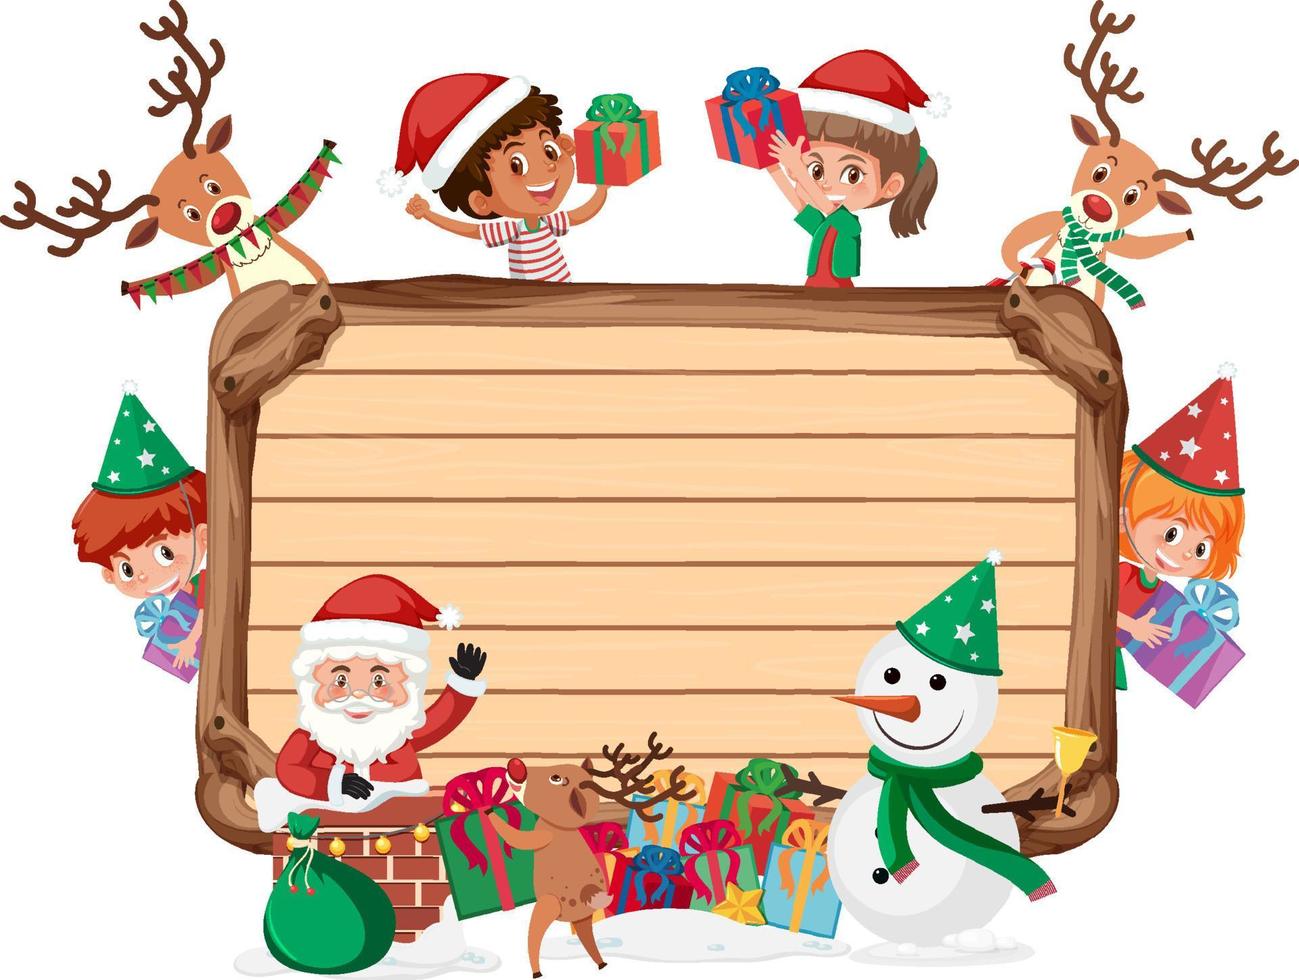 tavola di legno vuota con bambini in tema natalizio vettore